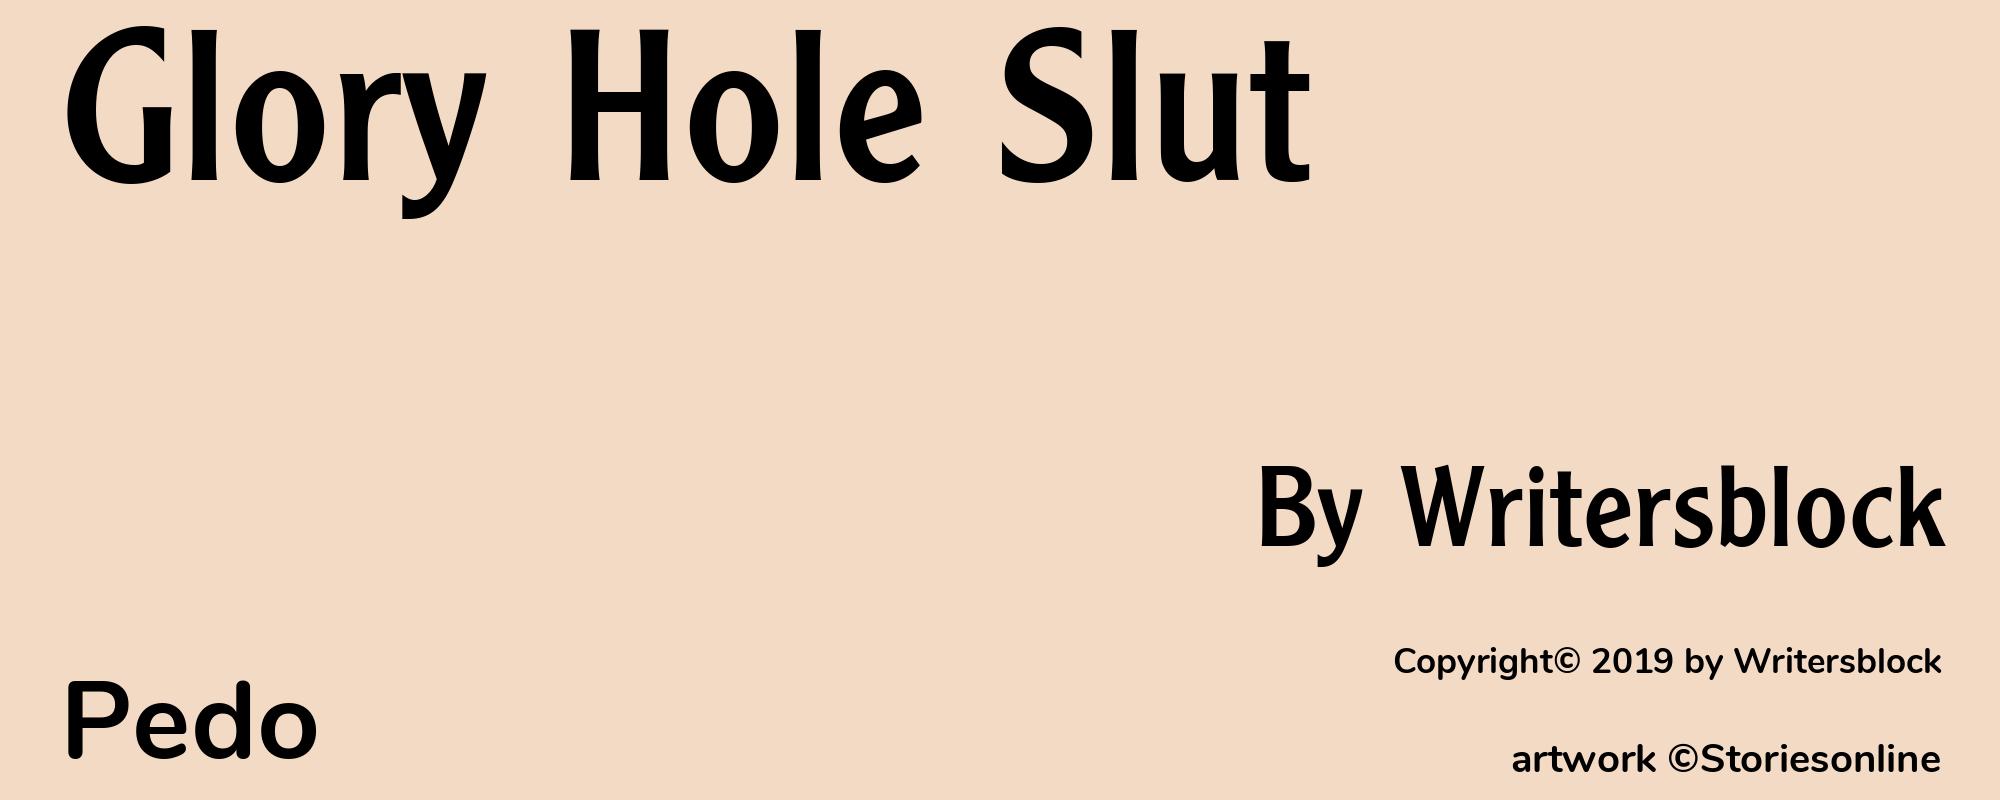 Glory Hole Slut - Cover